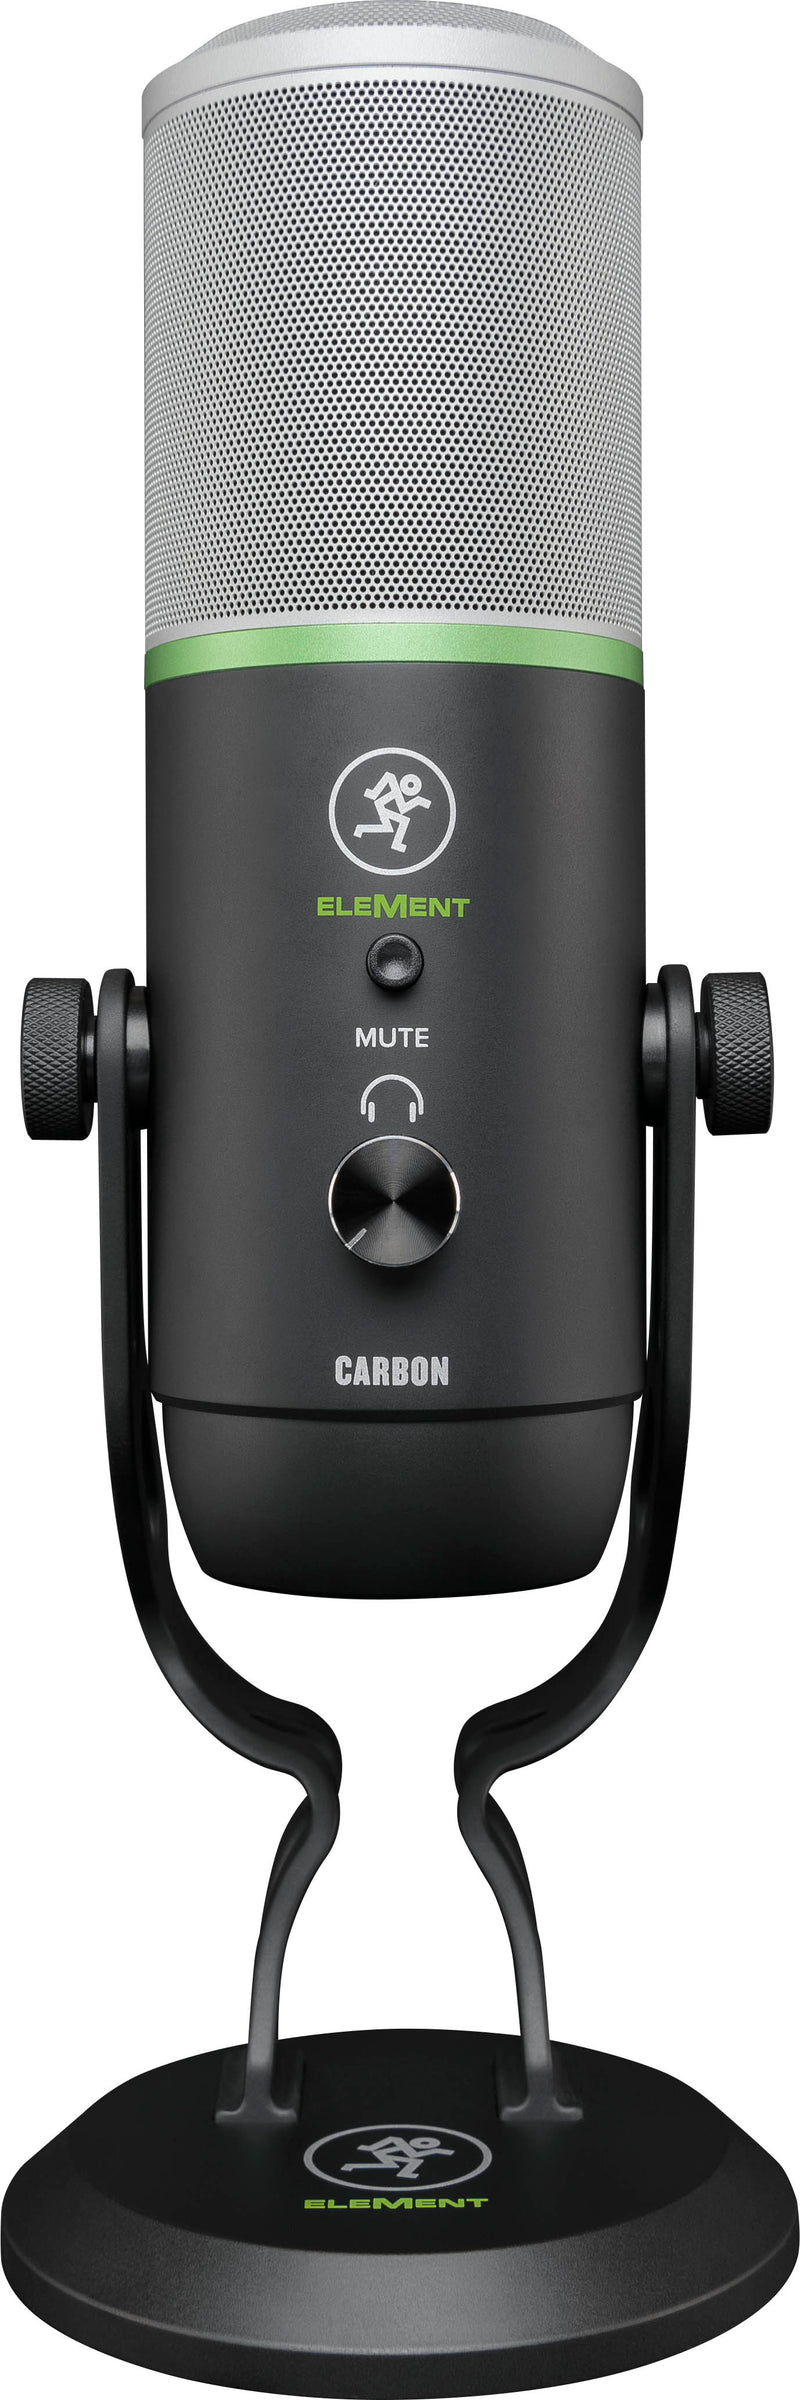 Microphone à condensateur USB de la série Mackie CARBON EleMent